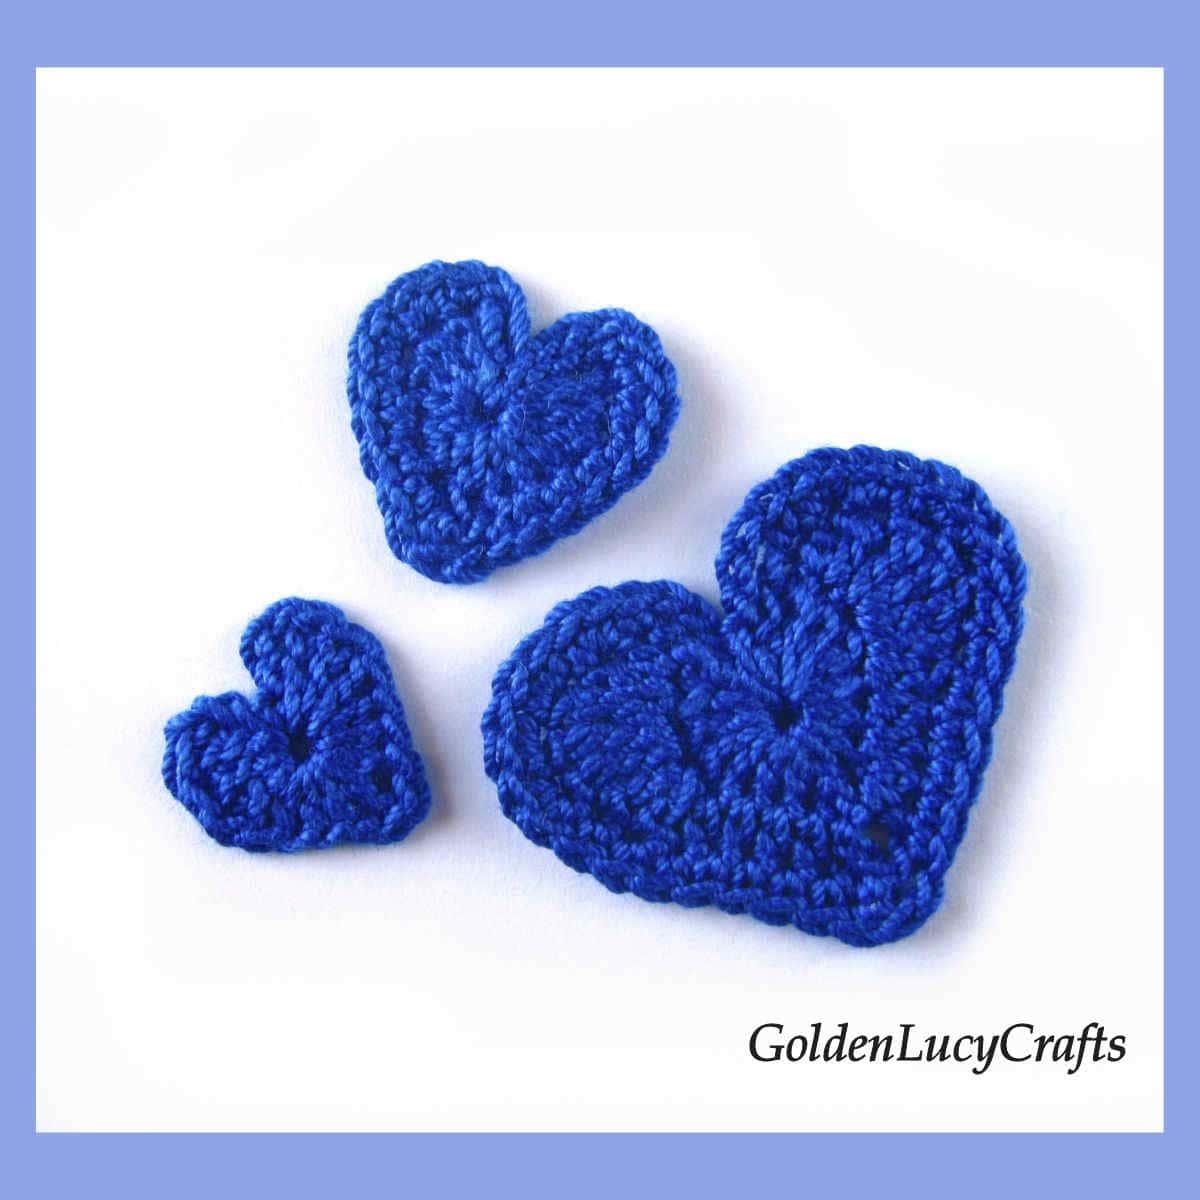 Three royal blue crochet hearts.